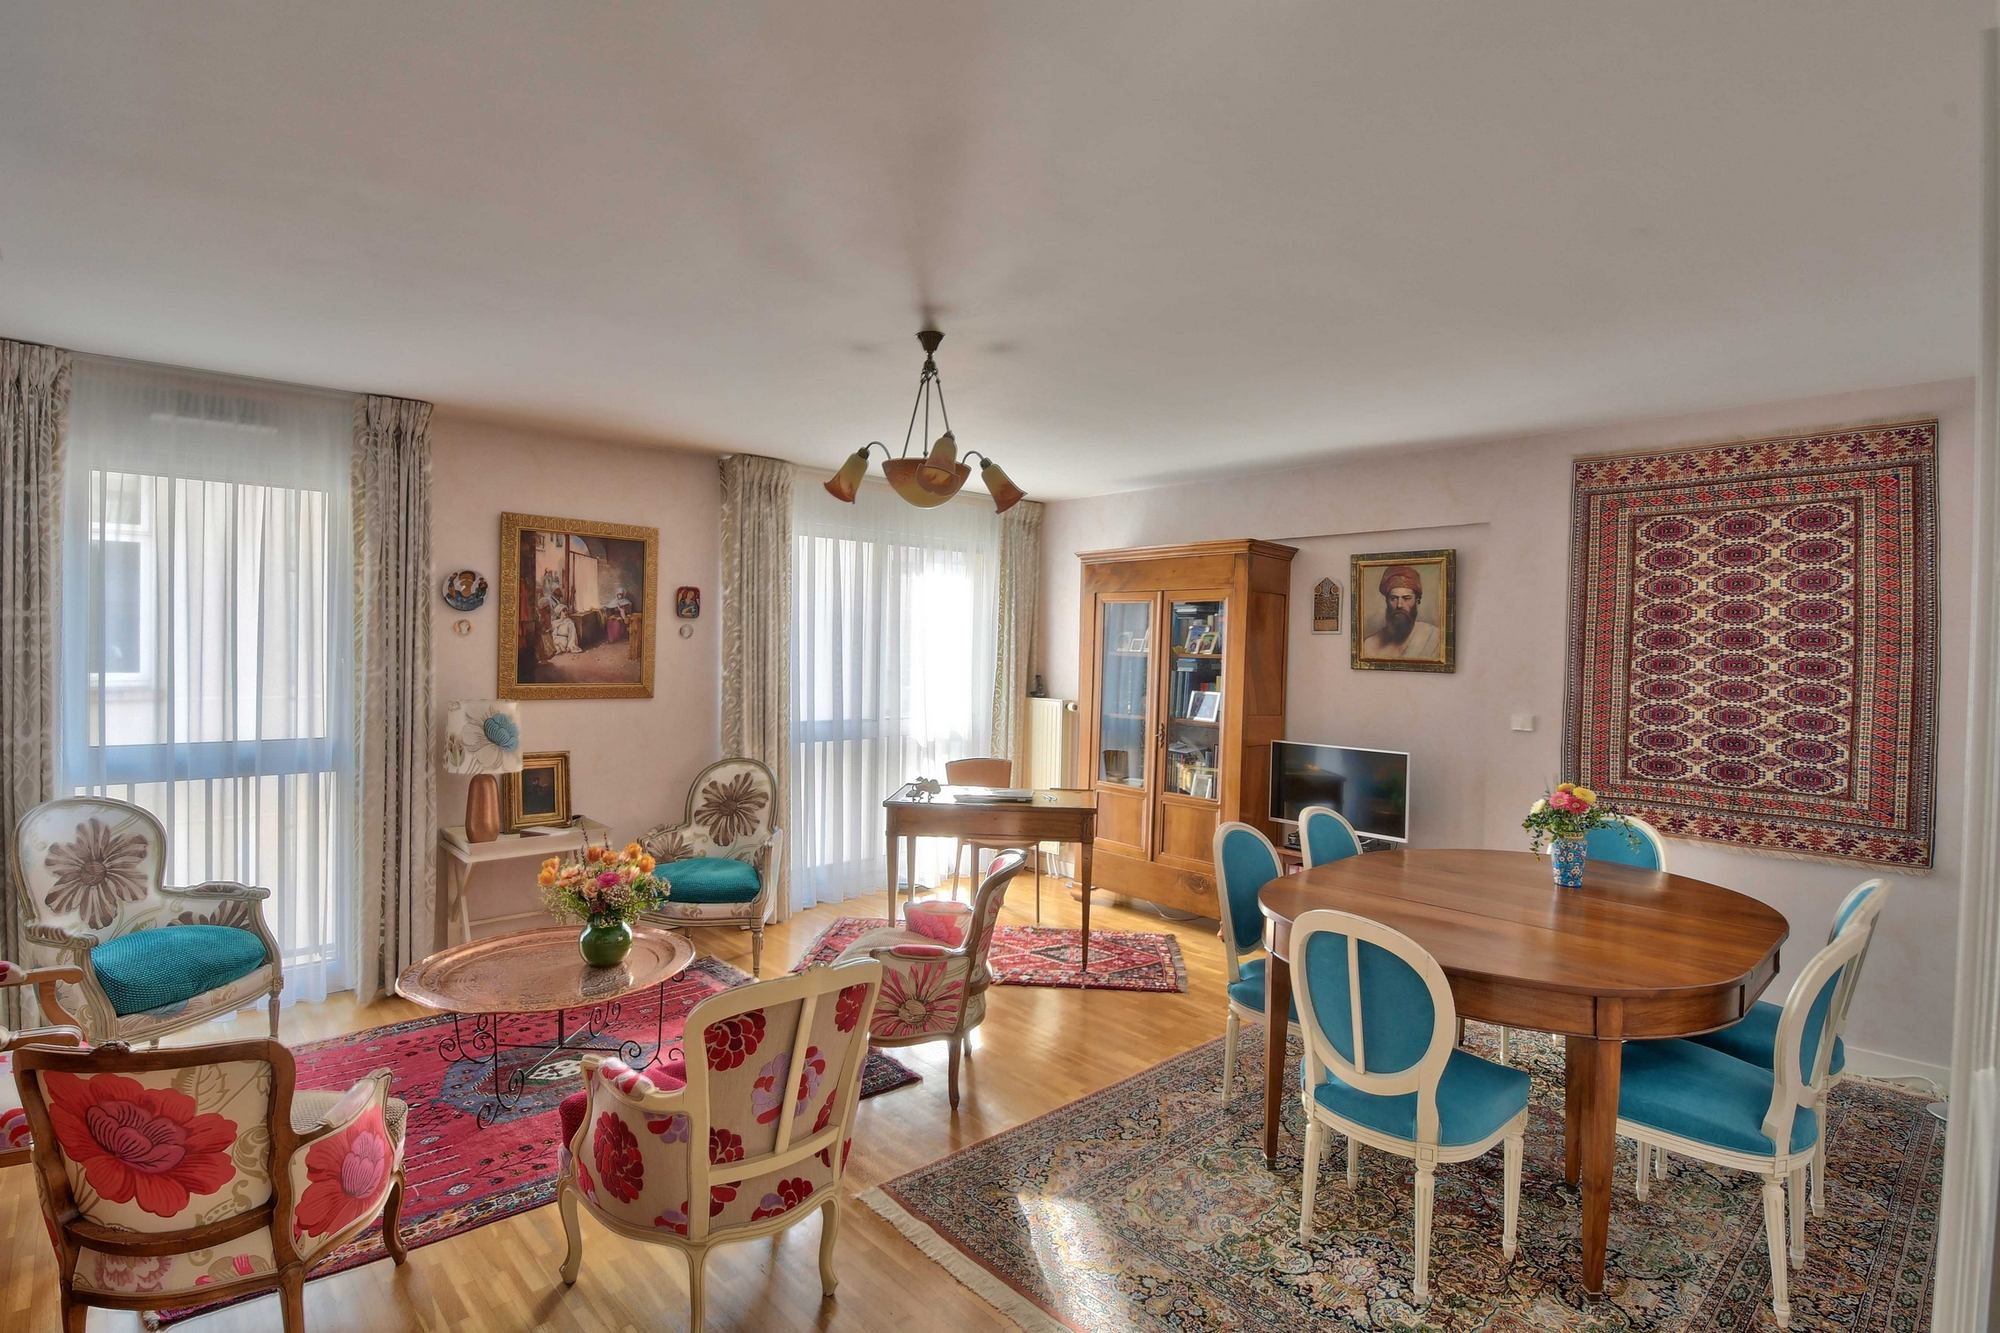 Appartement salon - salle à manger Lyon 69006 place puvis de chavannes Vente immobilier